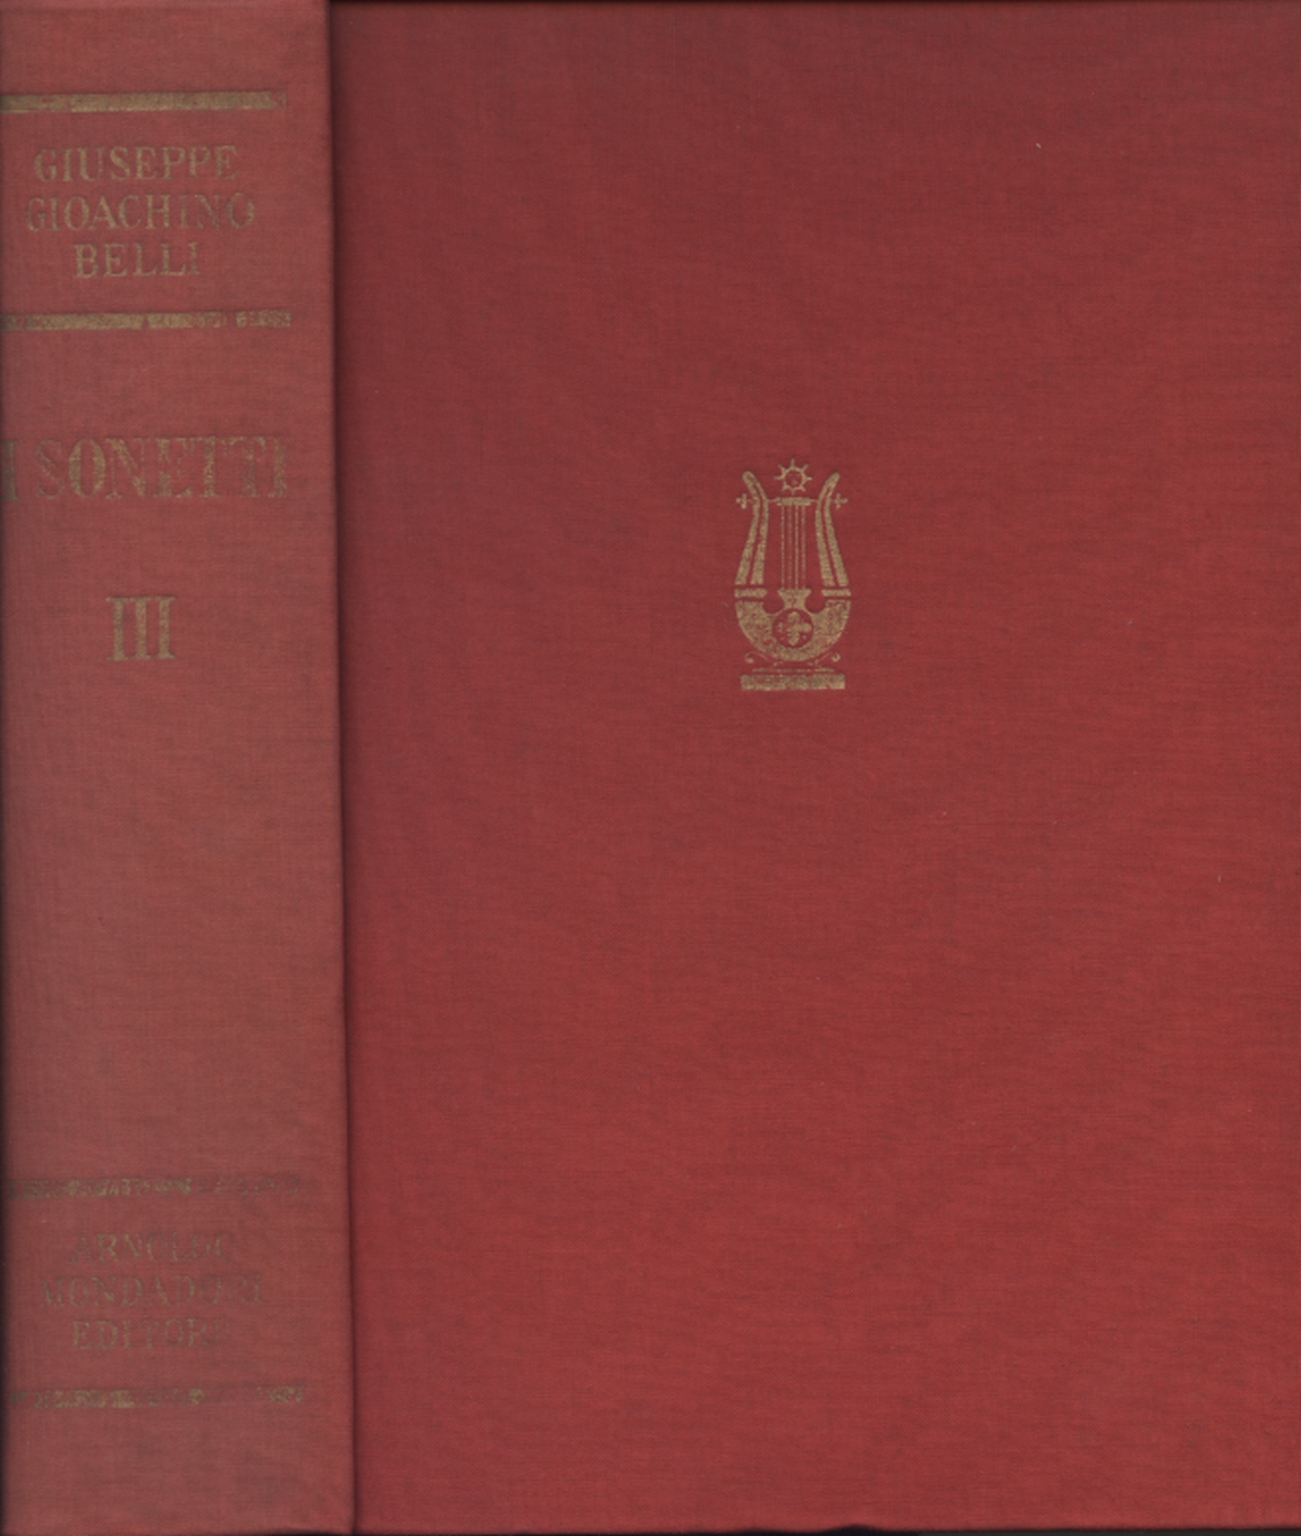 Los sonetos de Giuseppe Gioachino Belli (Volumen terc Giorgio Vigolo